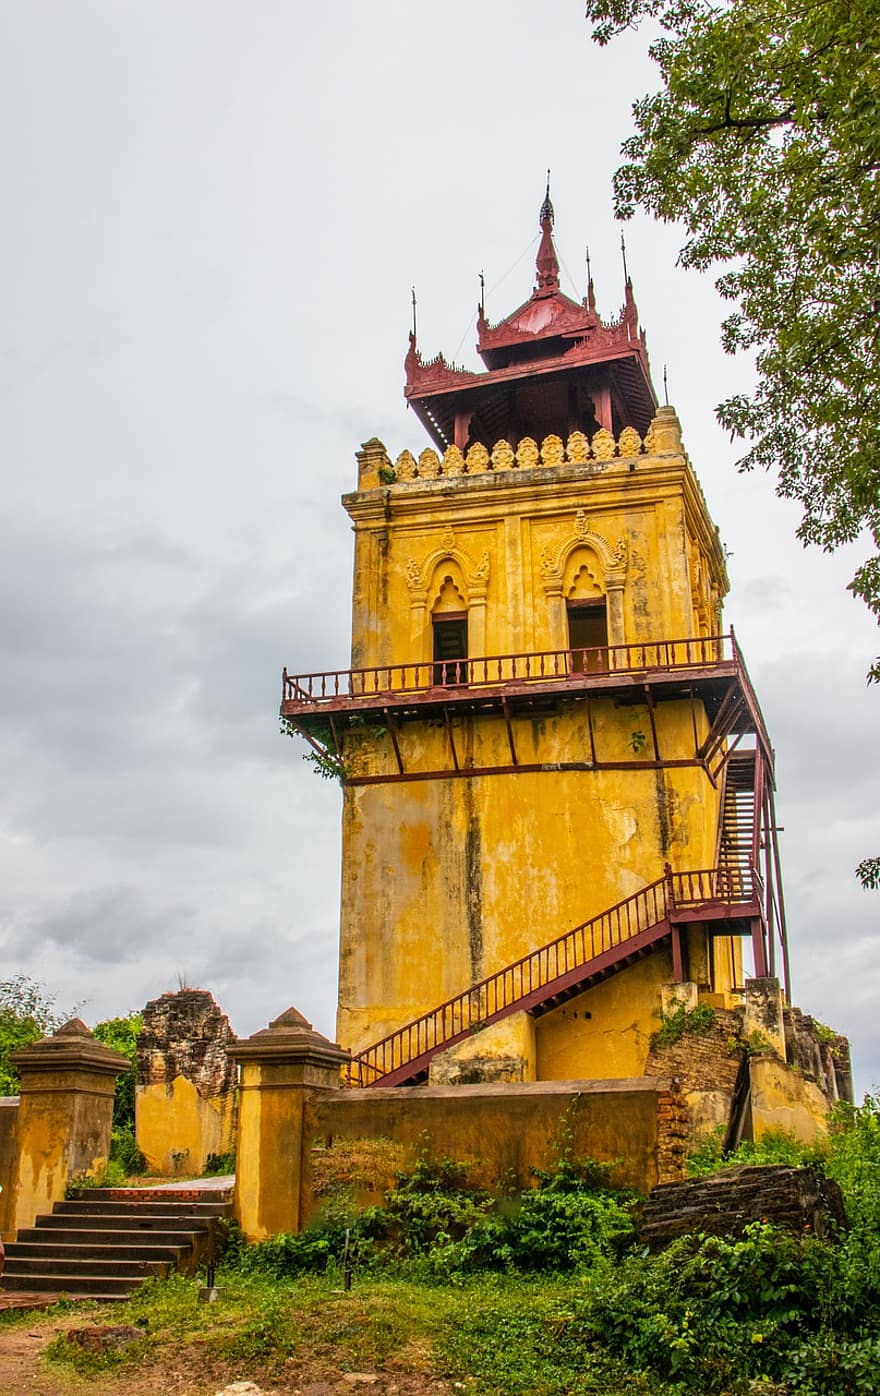 budynek, pagoda, wieża strażnicza, tradycyjny, architektura, mingun, Myanmar, mandalay, Birma, krajobraz, tradycja